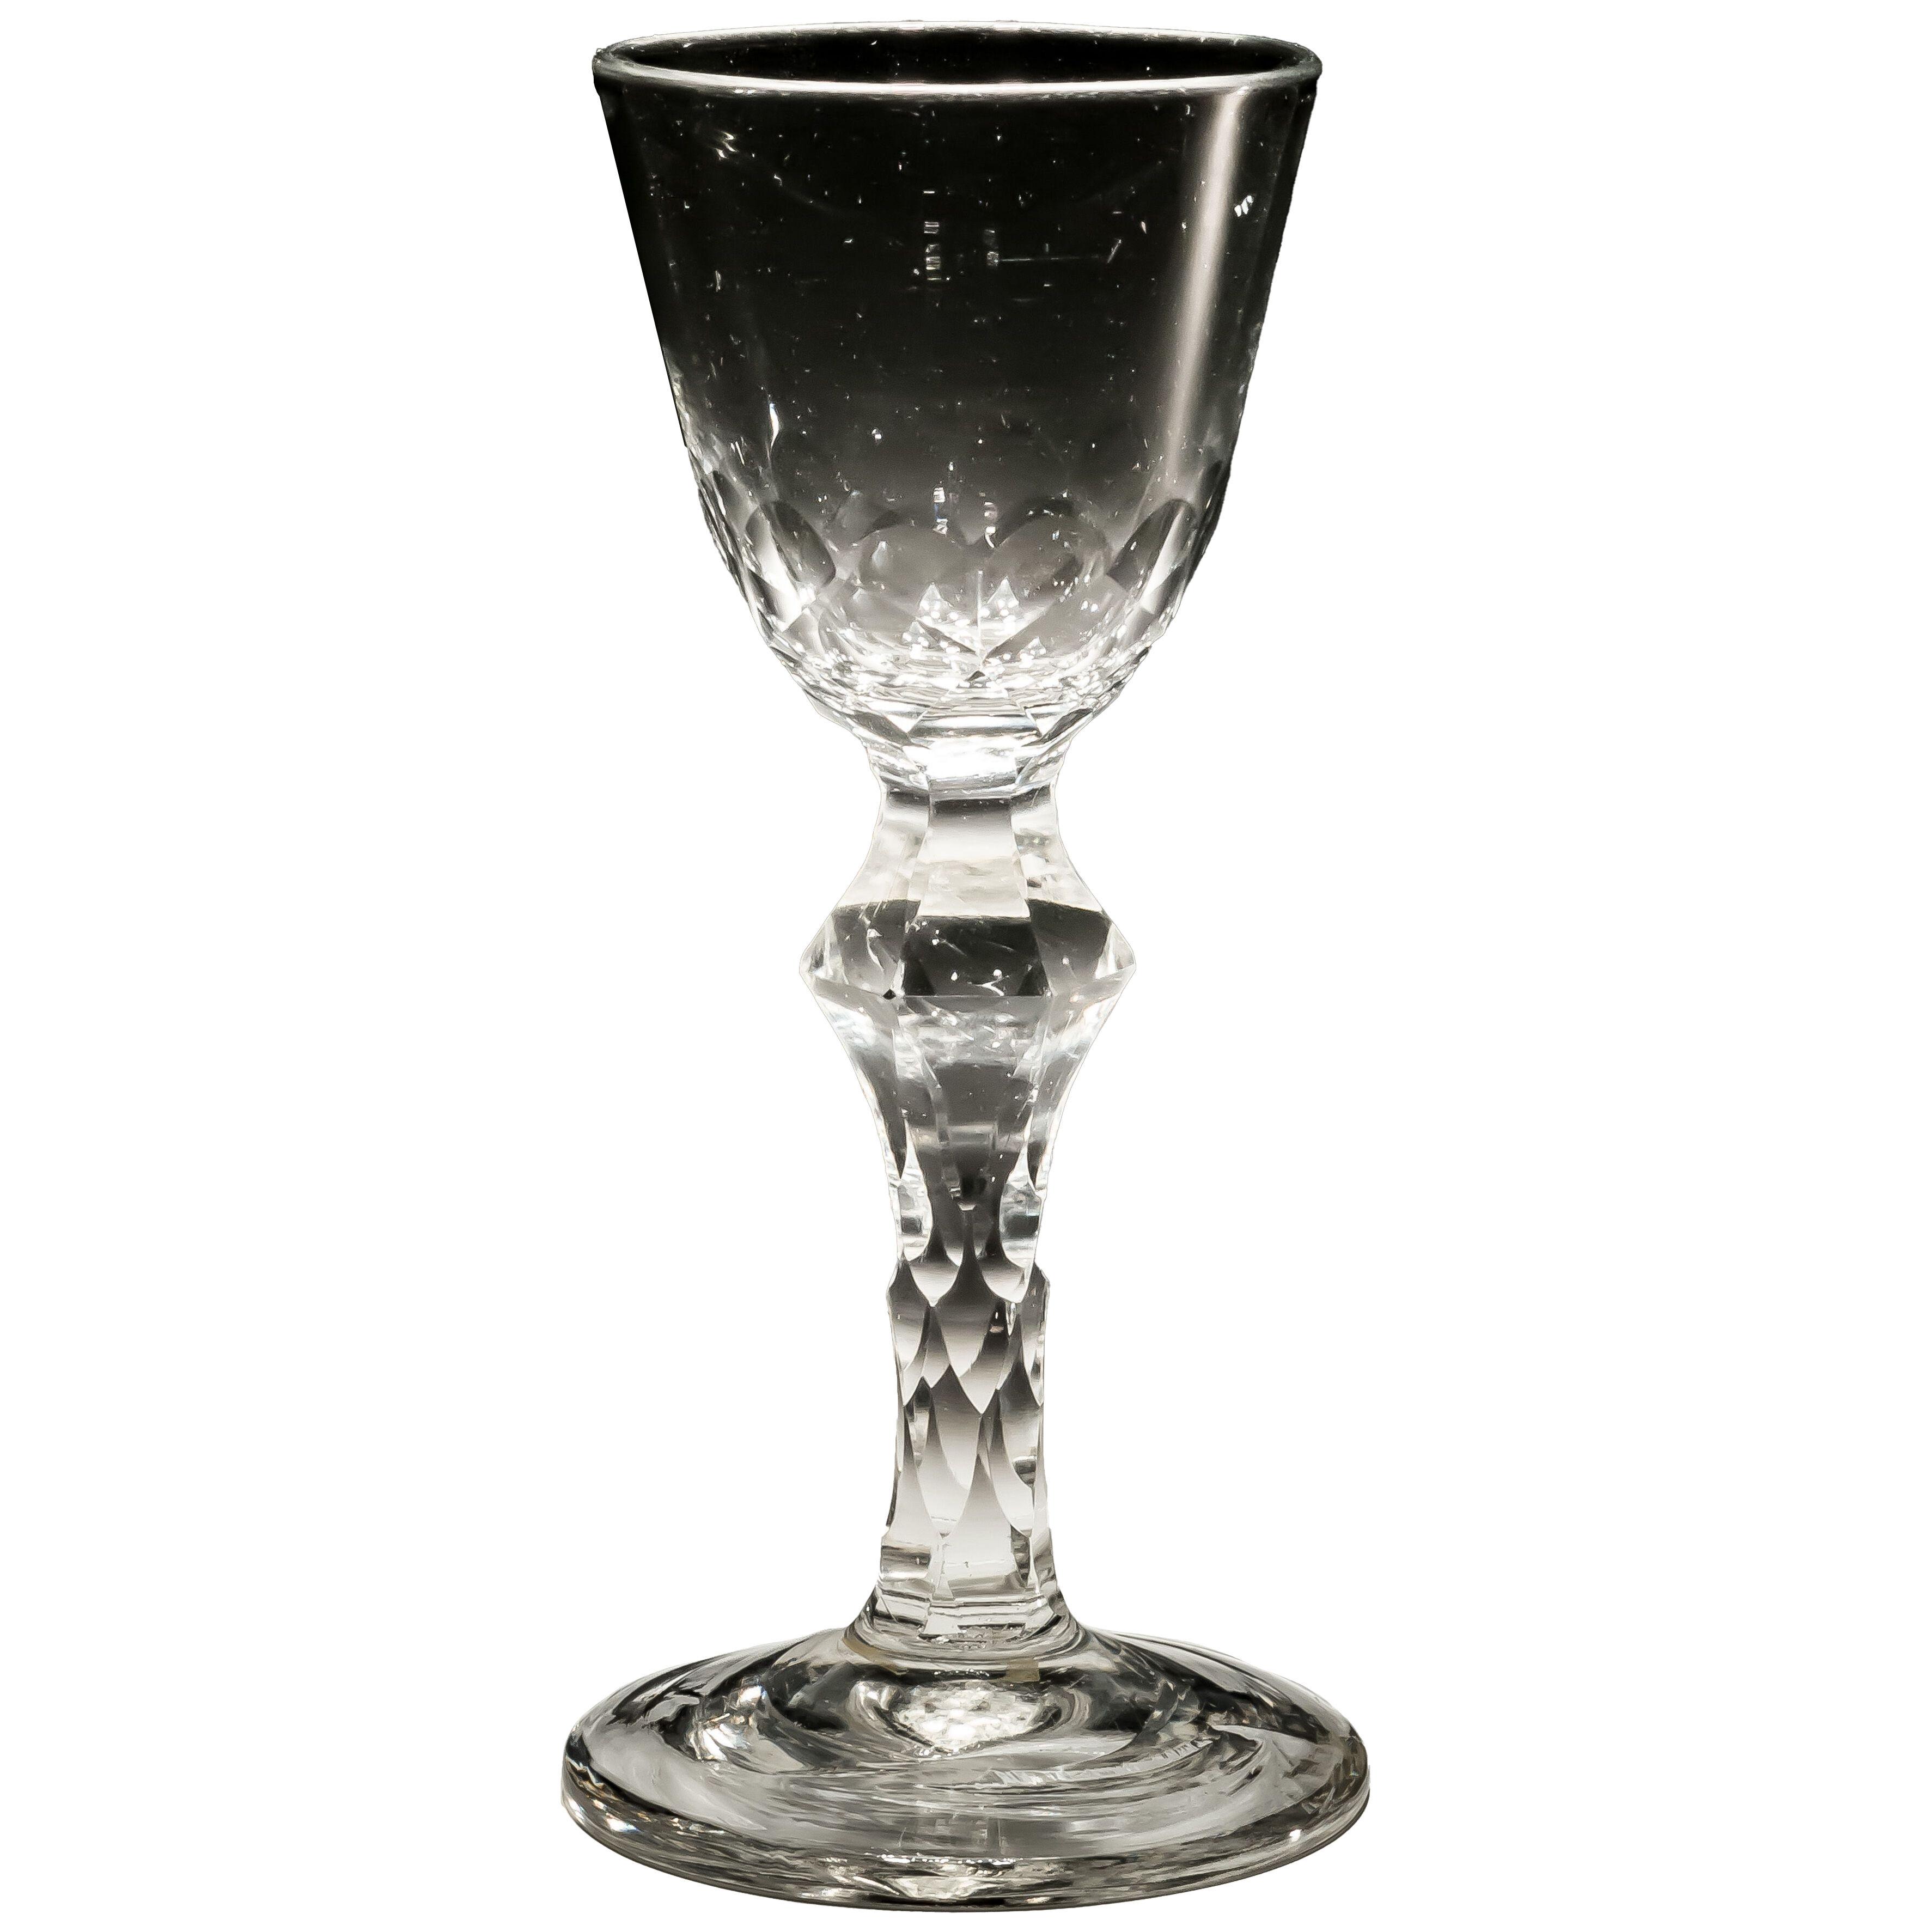 Unusual Facet Stem Wine Glass